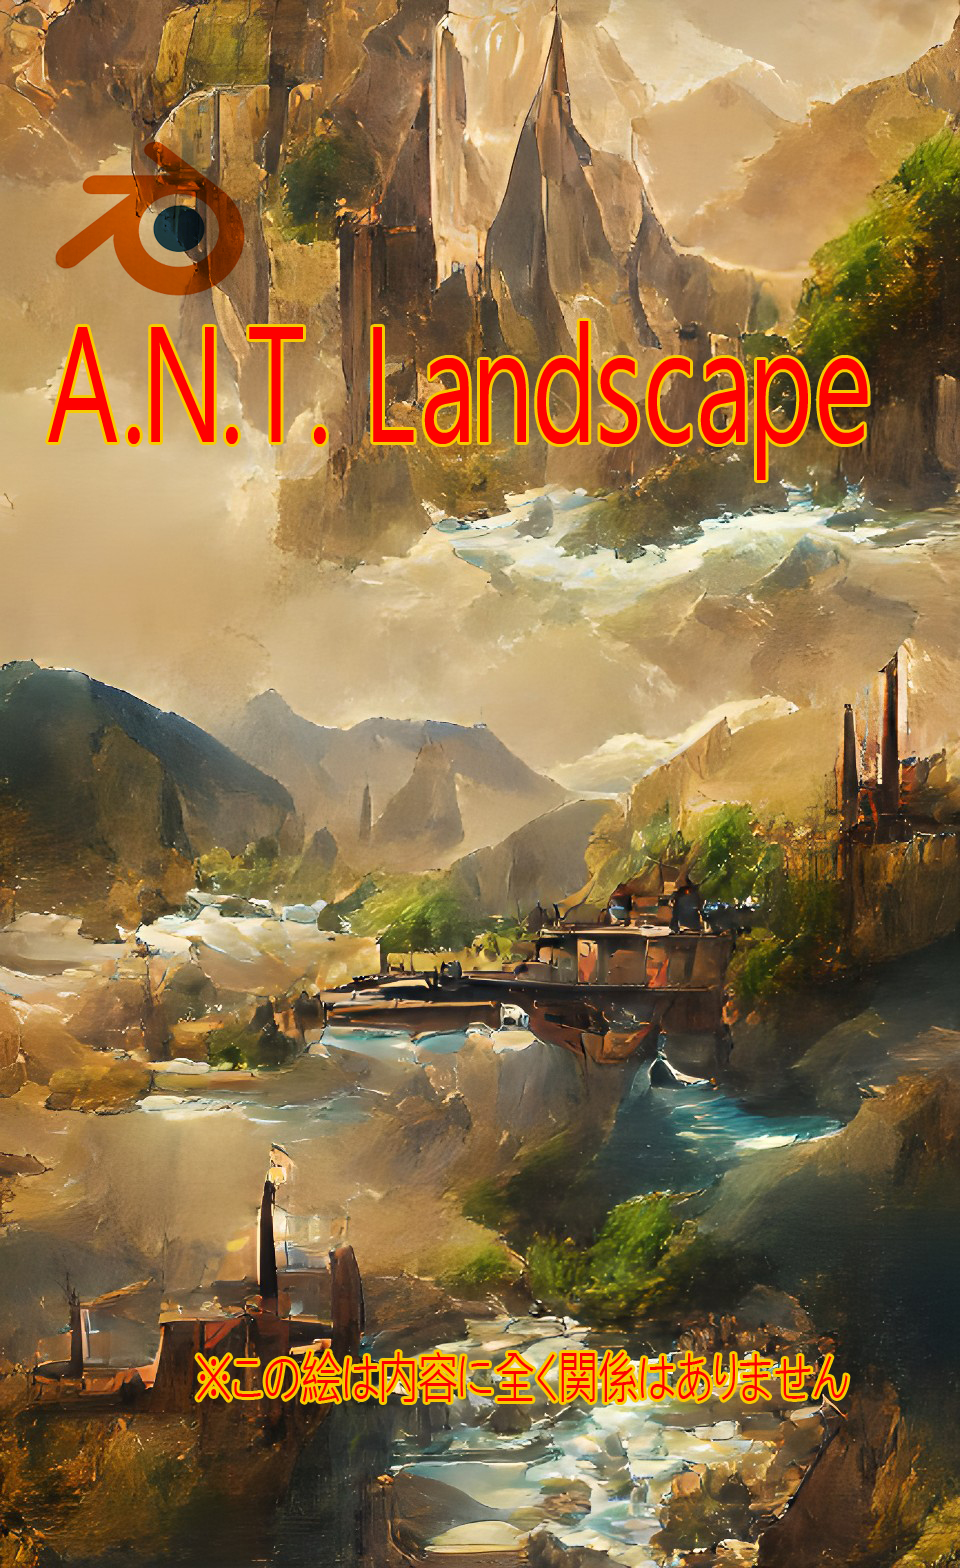 【blender】A.N.T. Landscapeで簡単に背景を作る！